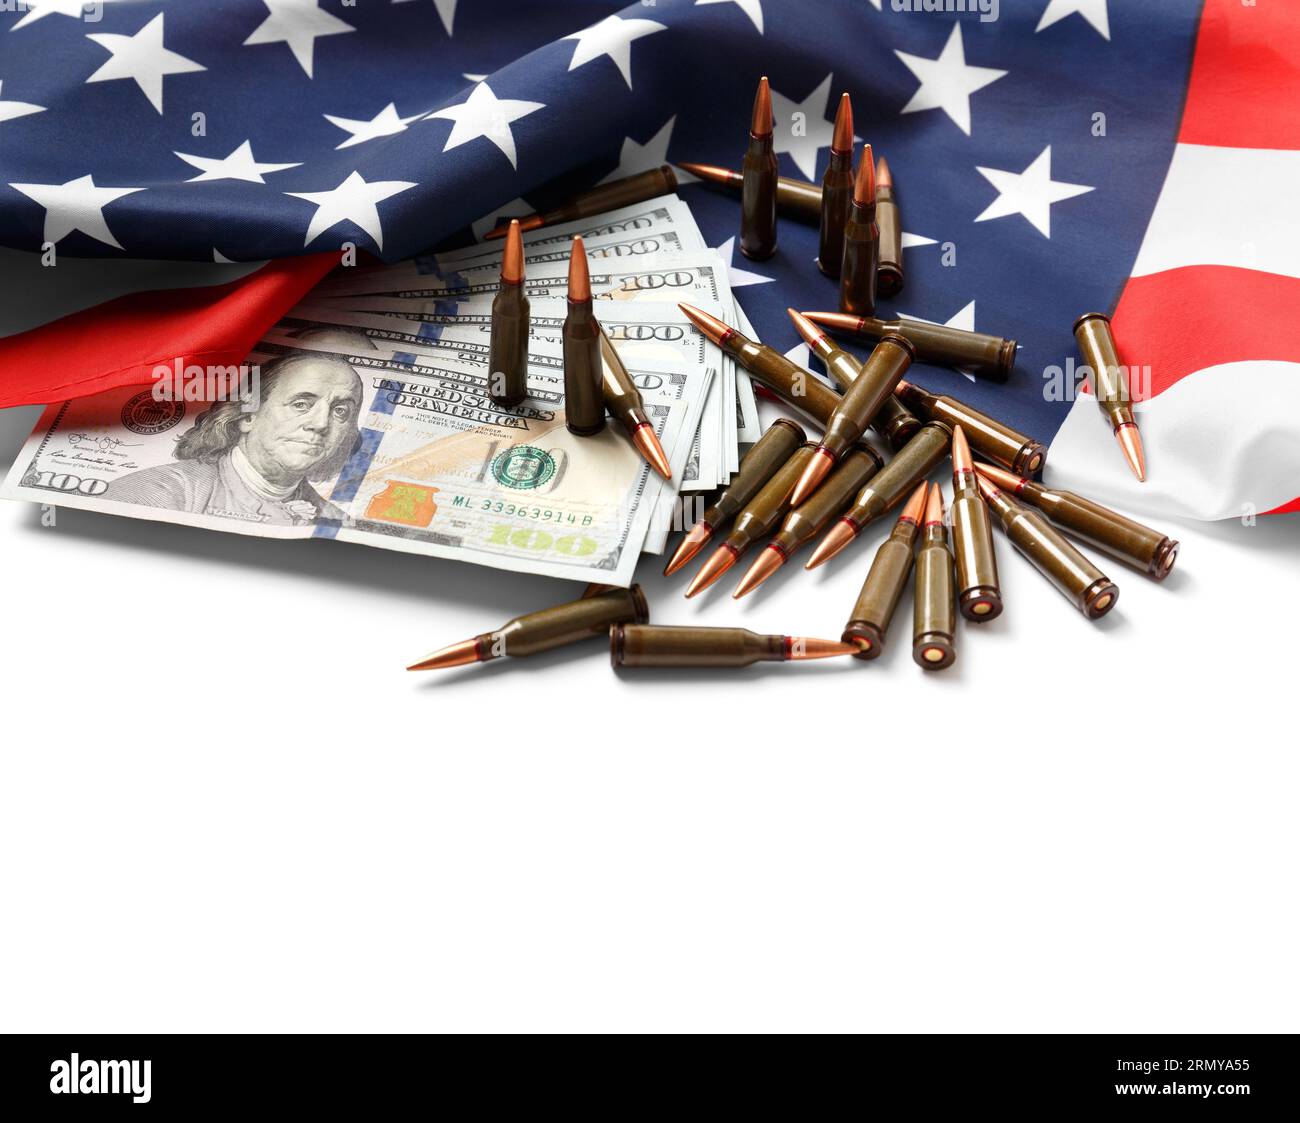 Amerikanische Flagge, Dollar, Kugeln, Muscheln, Patronen, Munition auf weißem Hintergrund. Das Konzept der Verleihvermietung, der Armee, des Waffenverkaufs. Militärindustrie Stockfoto